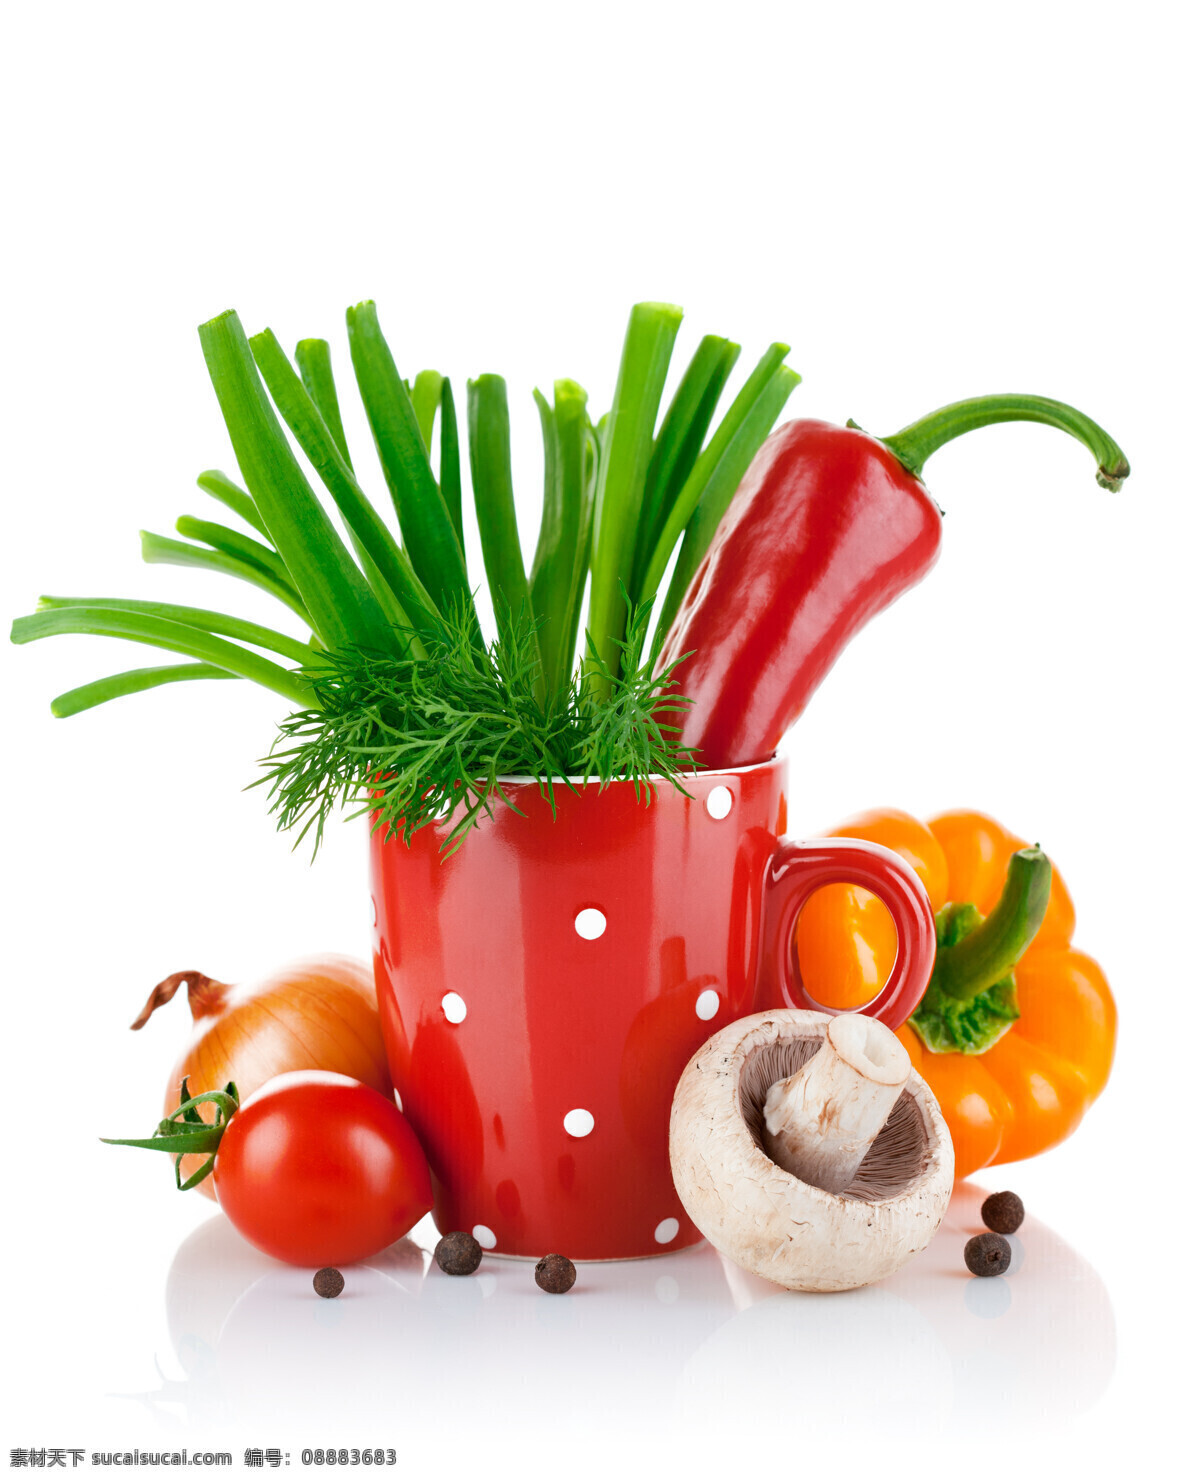 高清蔬菜摄影 香菇 辣椒 青菜 西红柿 蔬菜 蔬菜素材 蔬菜背景 杯子 水果蔬菜 餐饮美食 白色